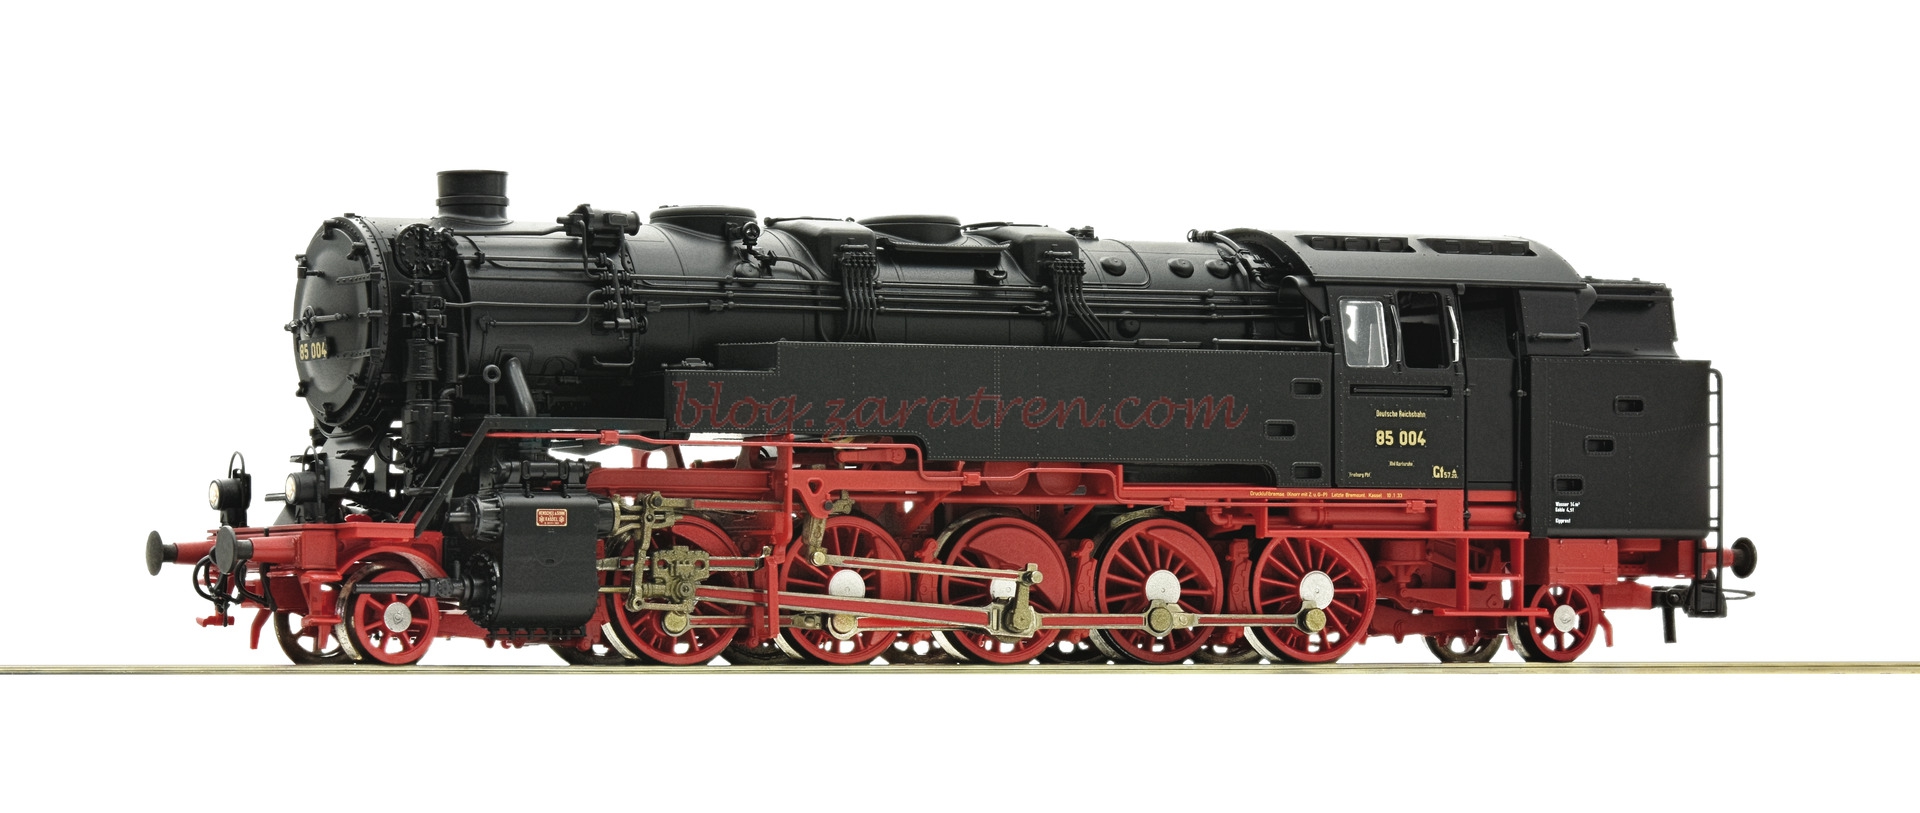 Roco – Locomotora de Vapor 85 004, DRG, Epoca II, Escala H0. Ref: 72192.